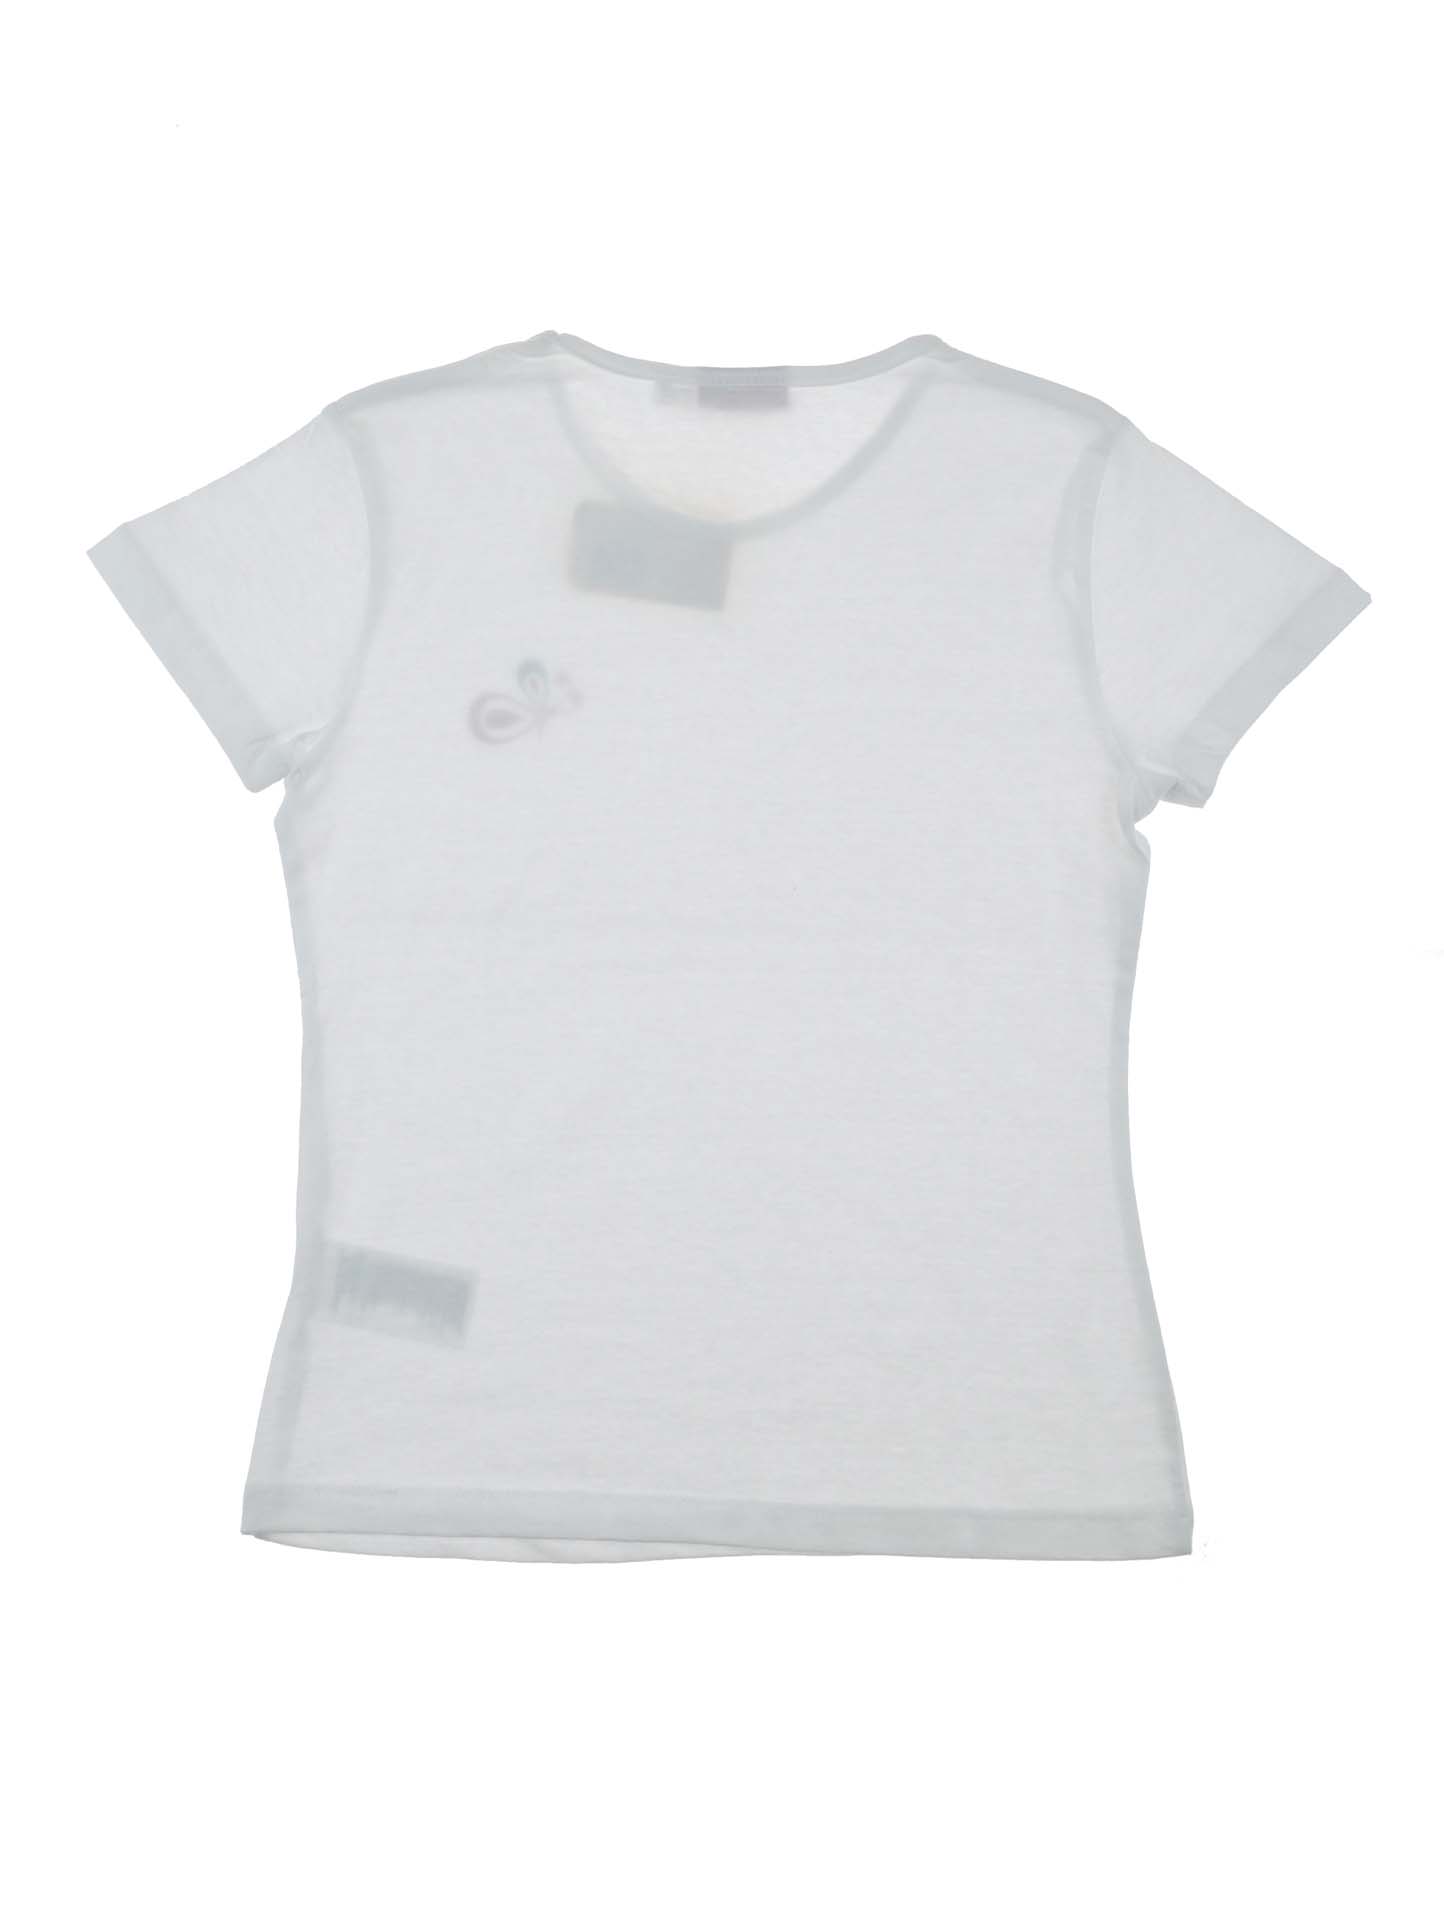 Біла футболка для дівчинки 8-10 років